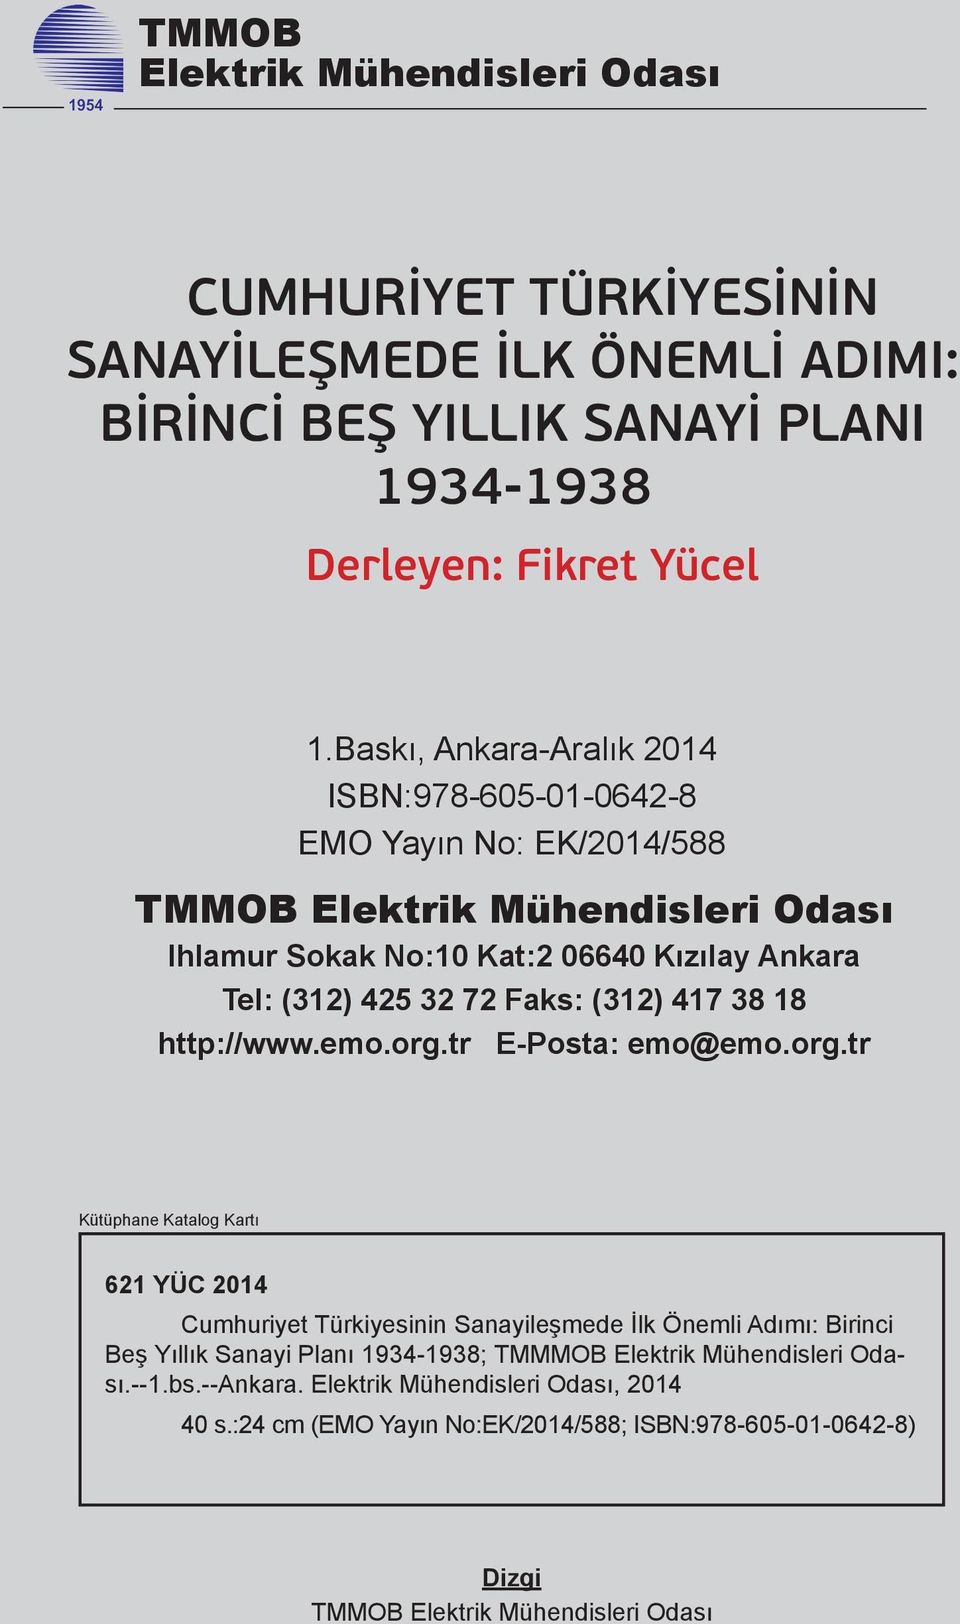 Baskı, Ankara-Aralık 2014 ISBN:978-605-01-0642-8 EMO Yayın No: EK/2014/588 TMMOB Elektrik Mühendisleri Odası Ihlamur Sokak No:10 Kat:2 06640 Kızılay Ankara Tel: (312) 425 32 72 Faks: (312) 417 38 18